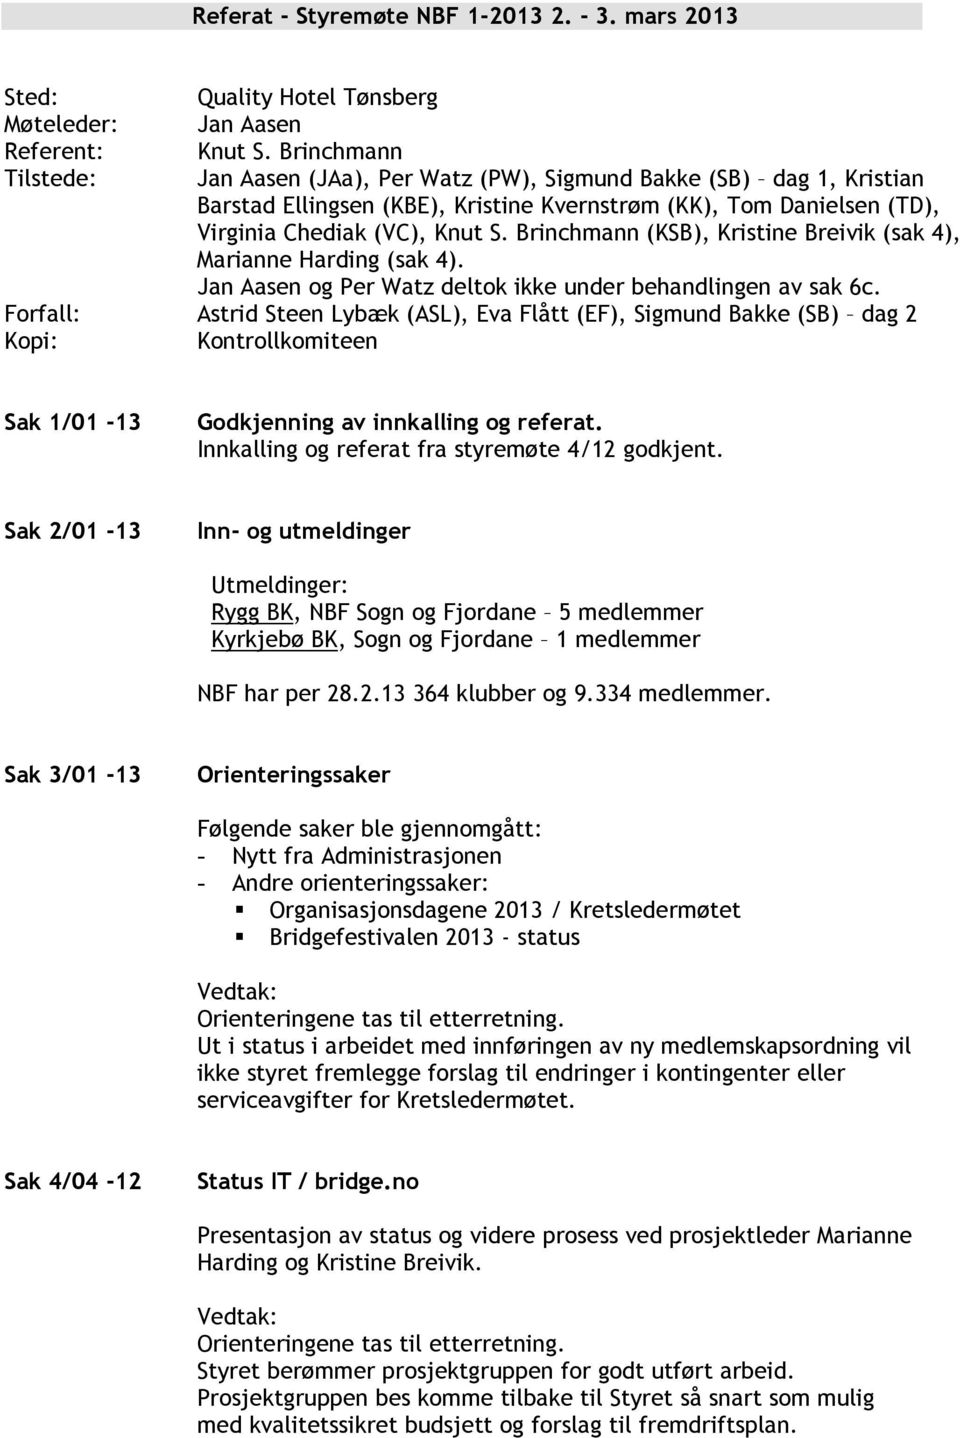 Brinchmann (KSB), Kristine Breivik (sak 4), Marianne Harding (sak 4). Jan Aasen og Per Watz deltok ikke under behandlingen av sak 6c.